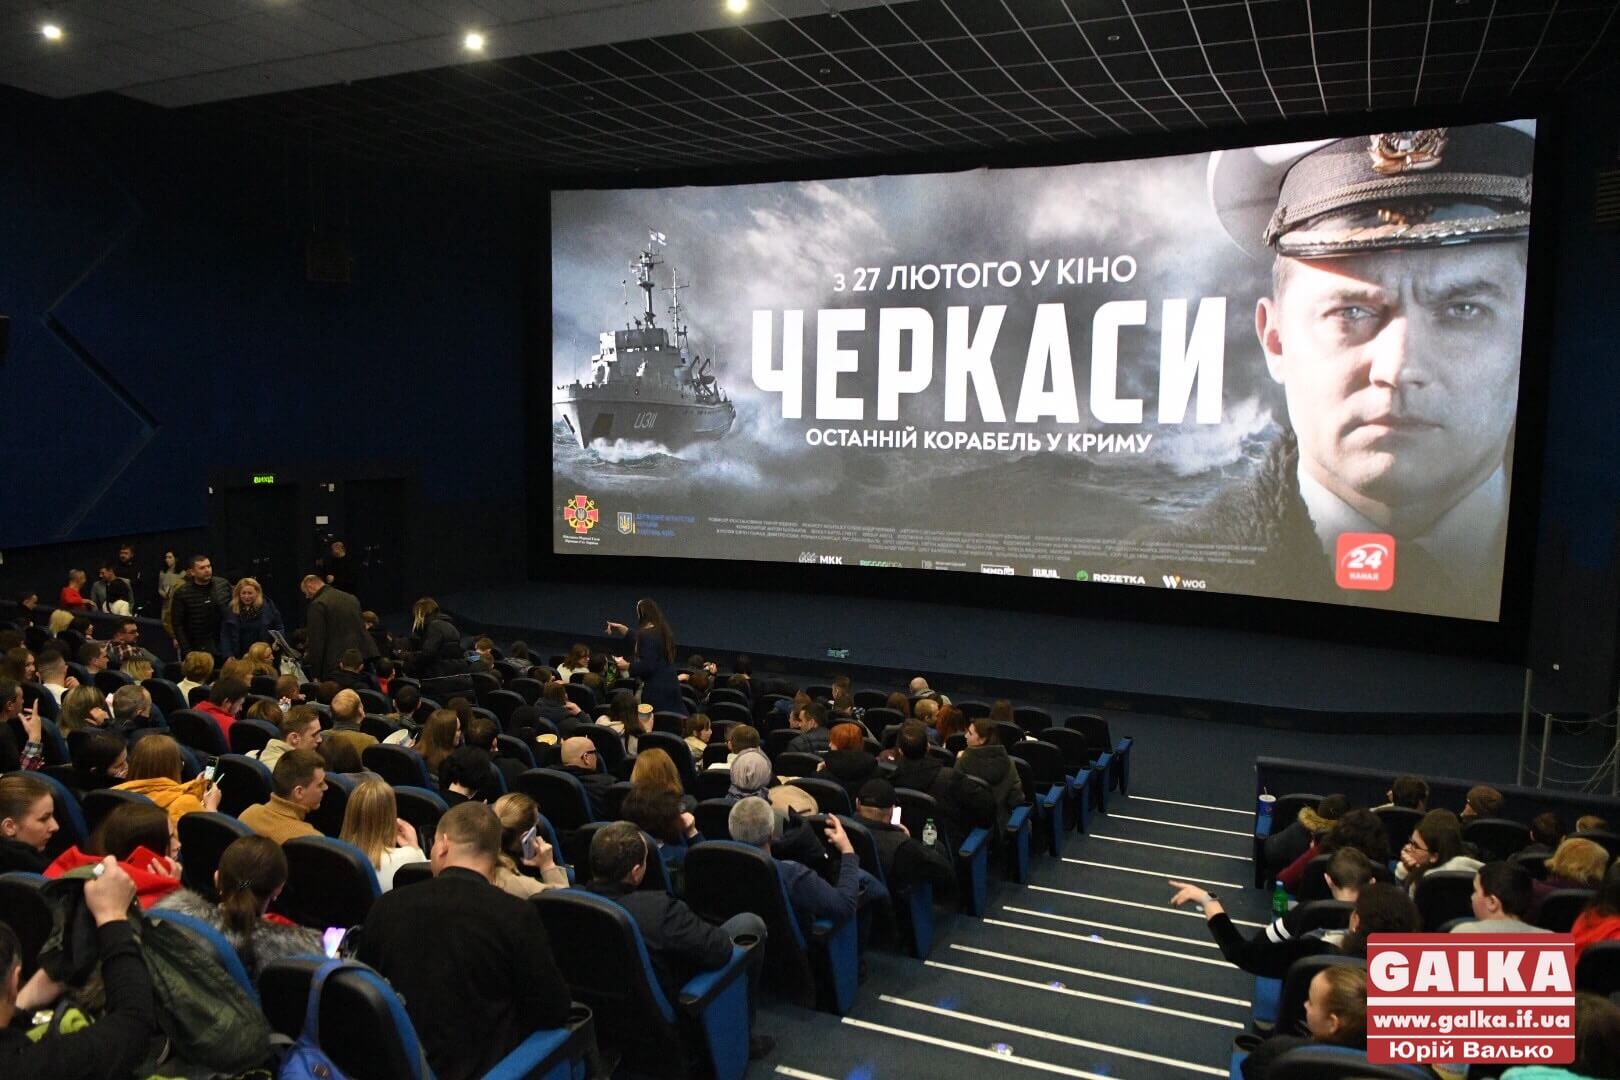 Творці та актори презентували в Івано-Франківську воєнну екшн-драму “Черкаси” (ФОТО)